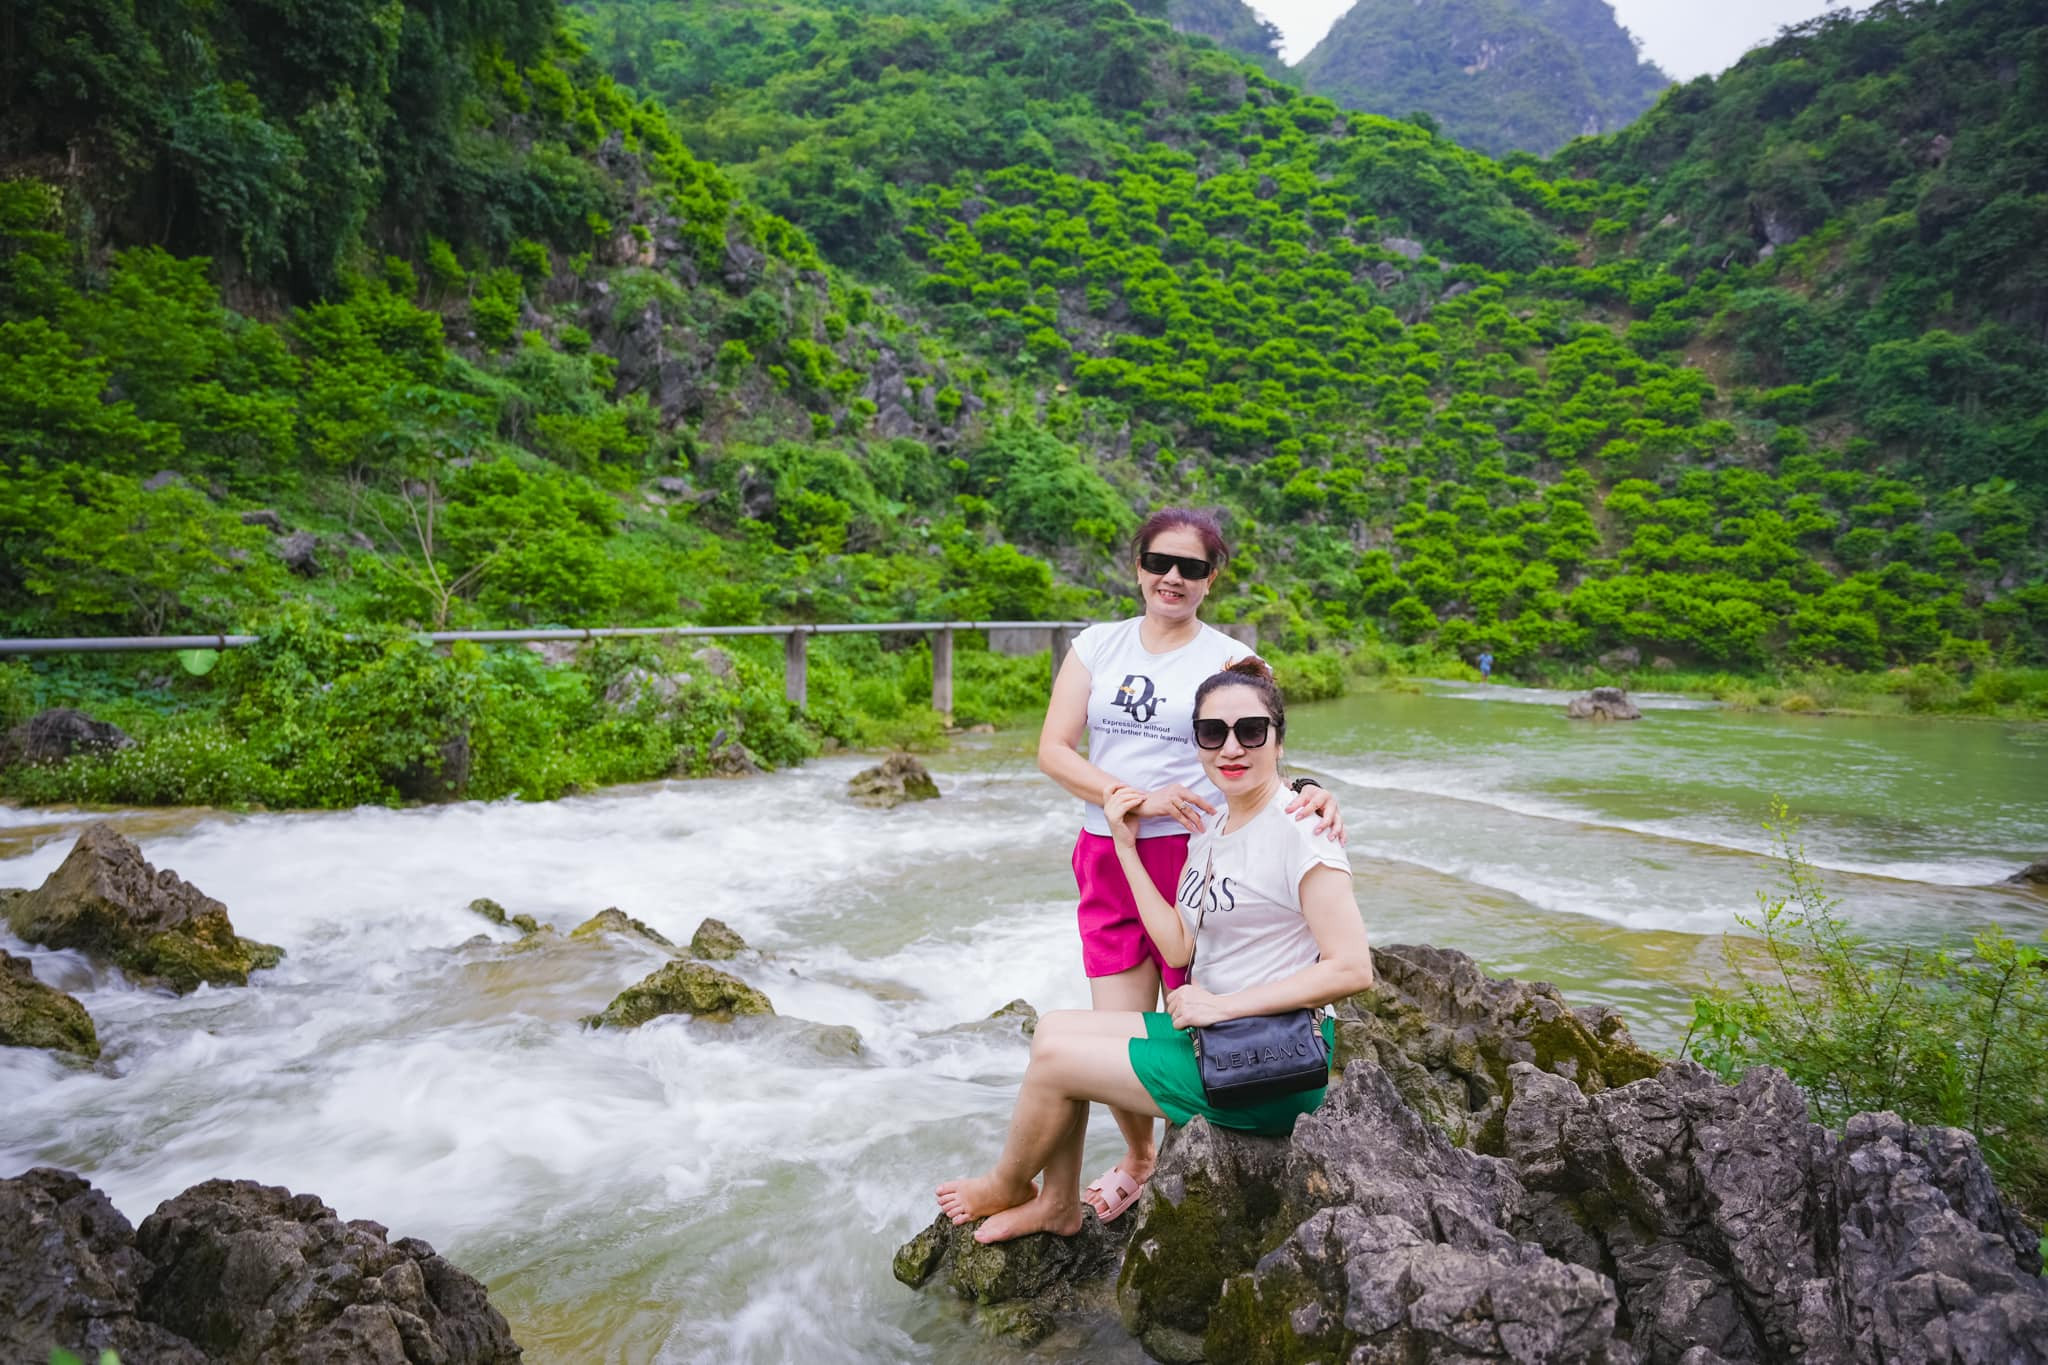 Thung lũng xanh cách Hà Nội 130km, khách tới ăn đặc sản, cắm trại, chèo thuyền